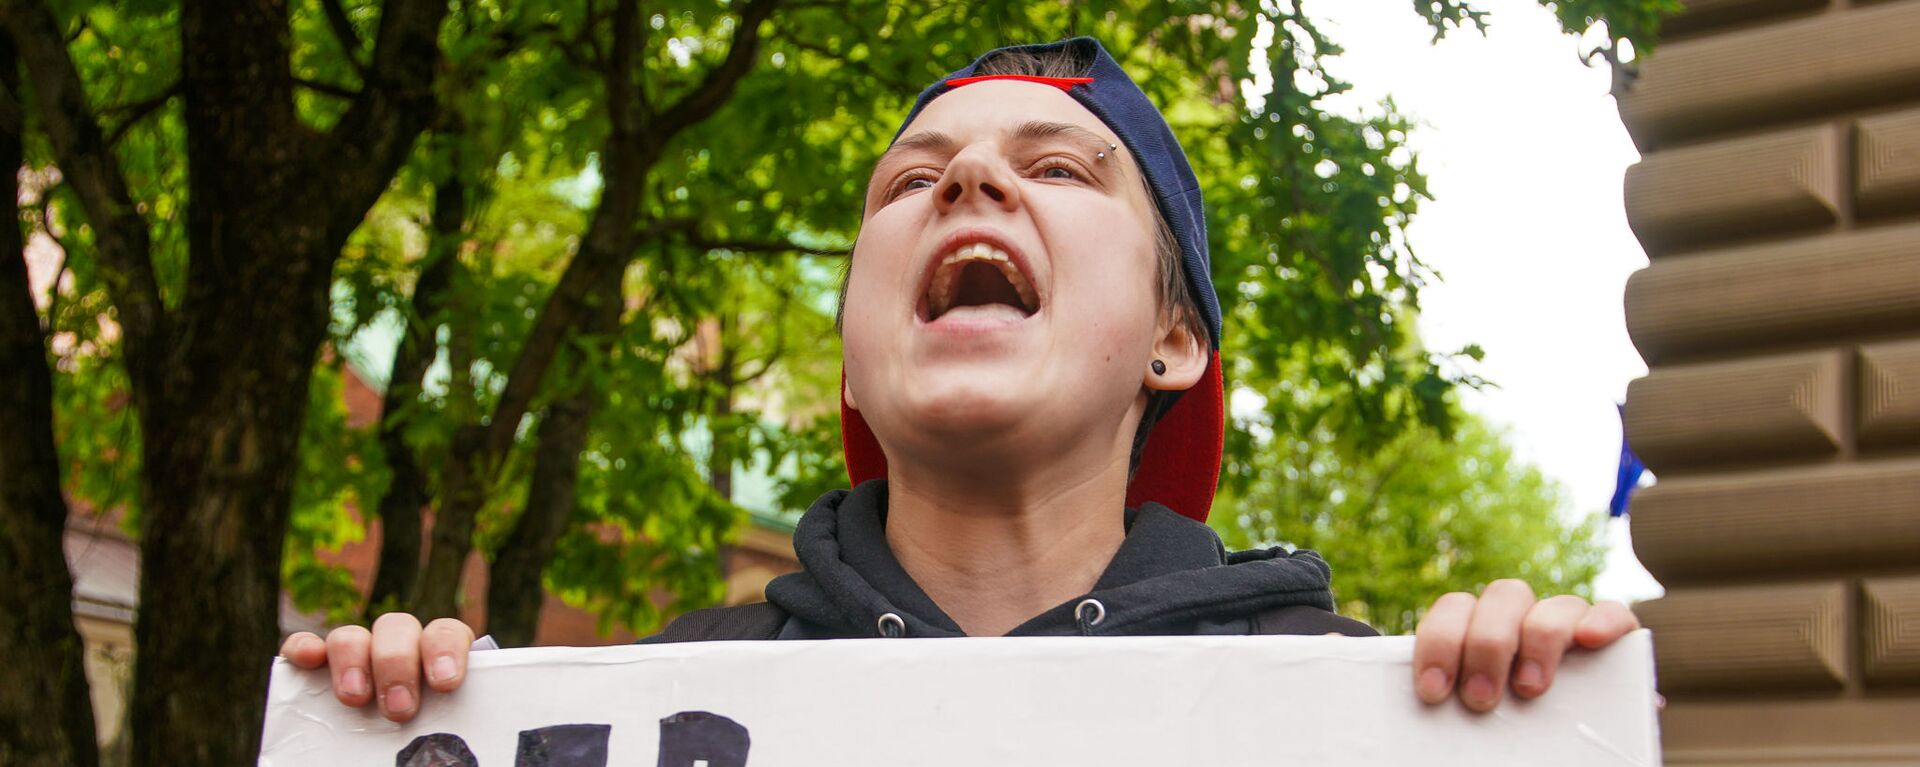  Пикет молодежной организации Протест за права представителей ЛГБТ - Sputnik Латвия, 1920, 16.03.2021